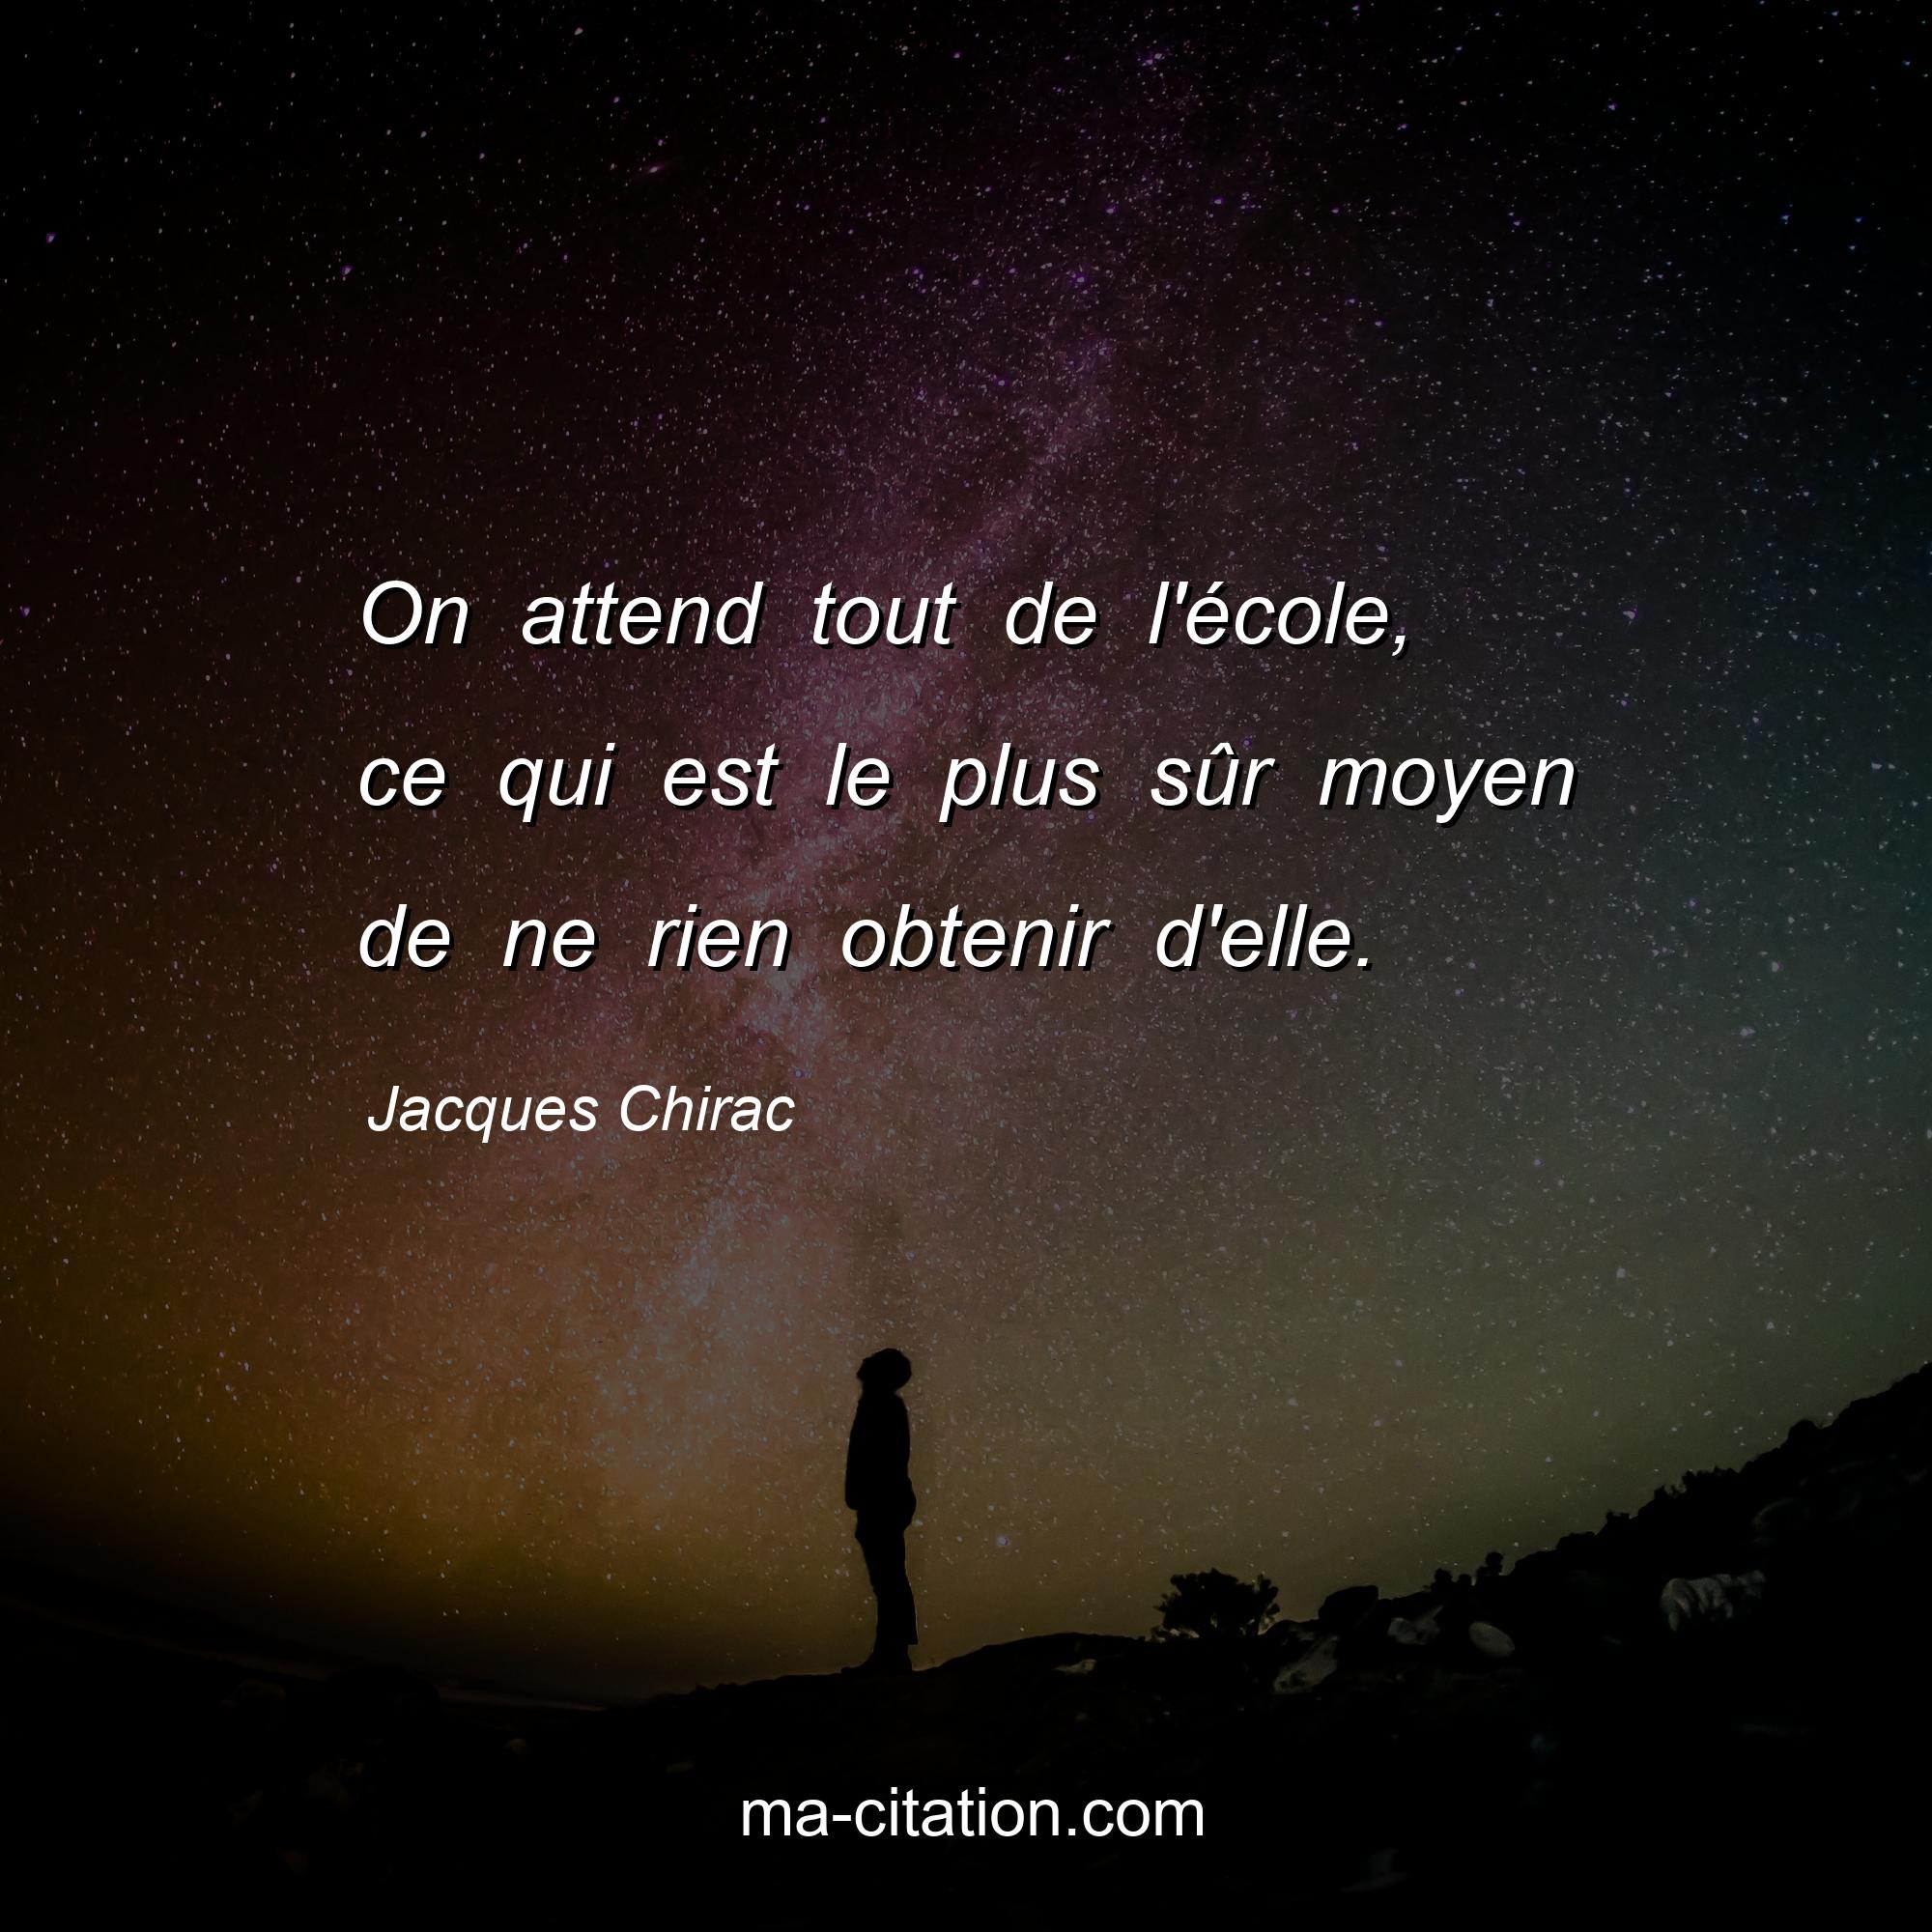 Jacques Chirac : On attend tout de l'école, ce qui est le plus sûr moyen de ne rien obtenir d'elle.